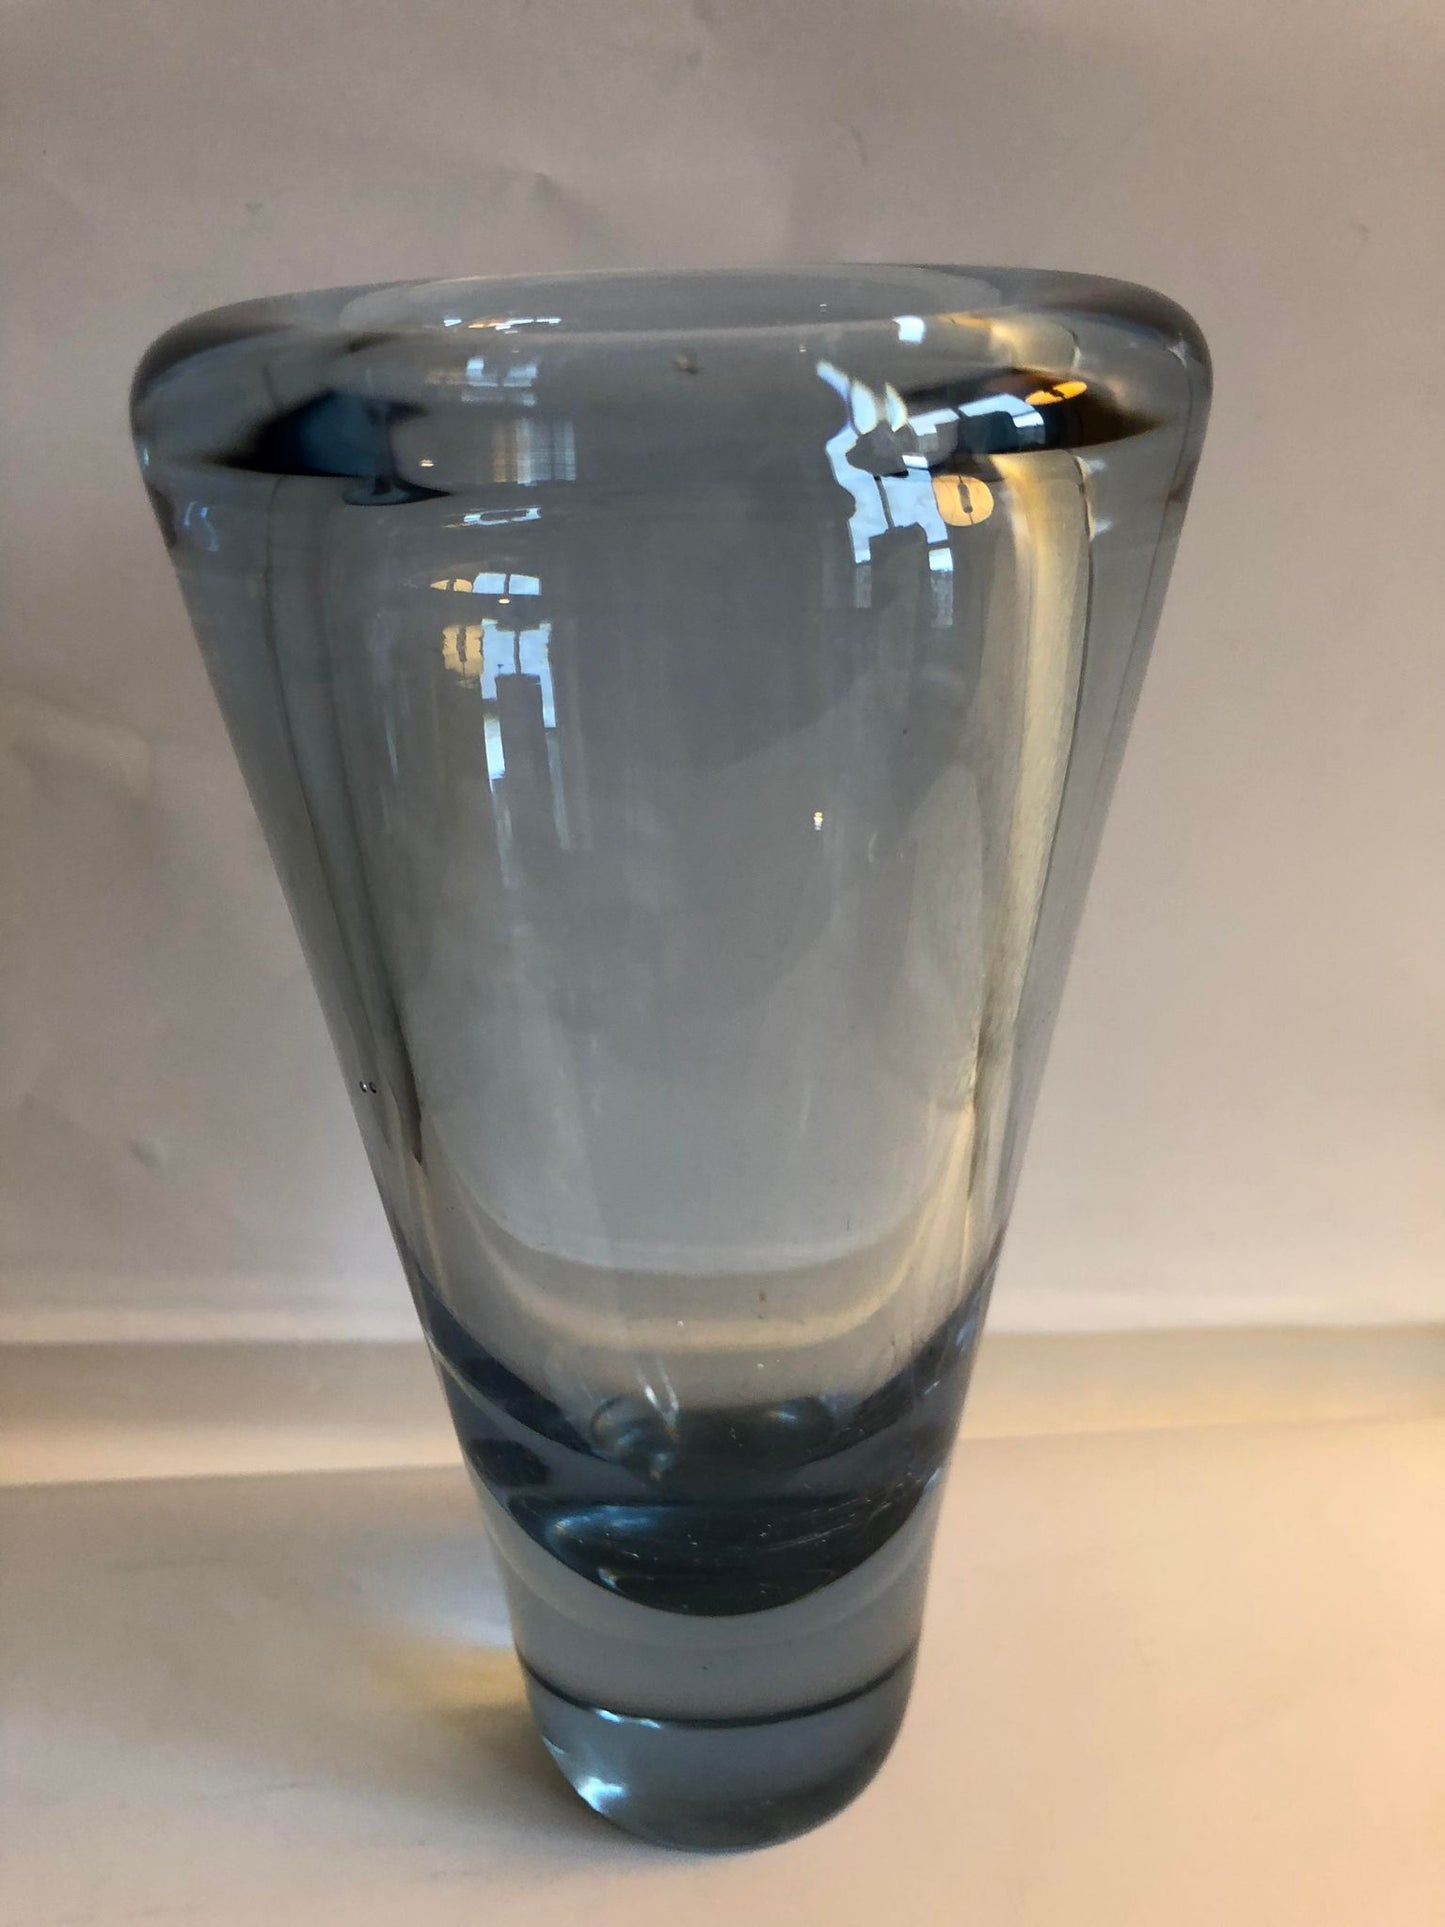 Retro glass vase, Umanak design by Per Lütken for Holmegaard - no. 0520